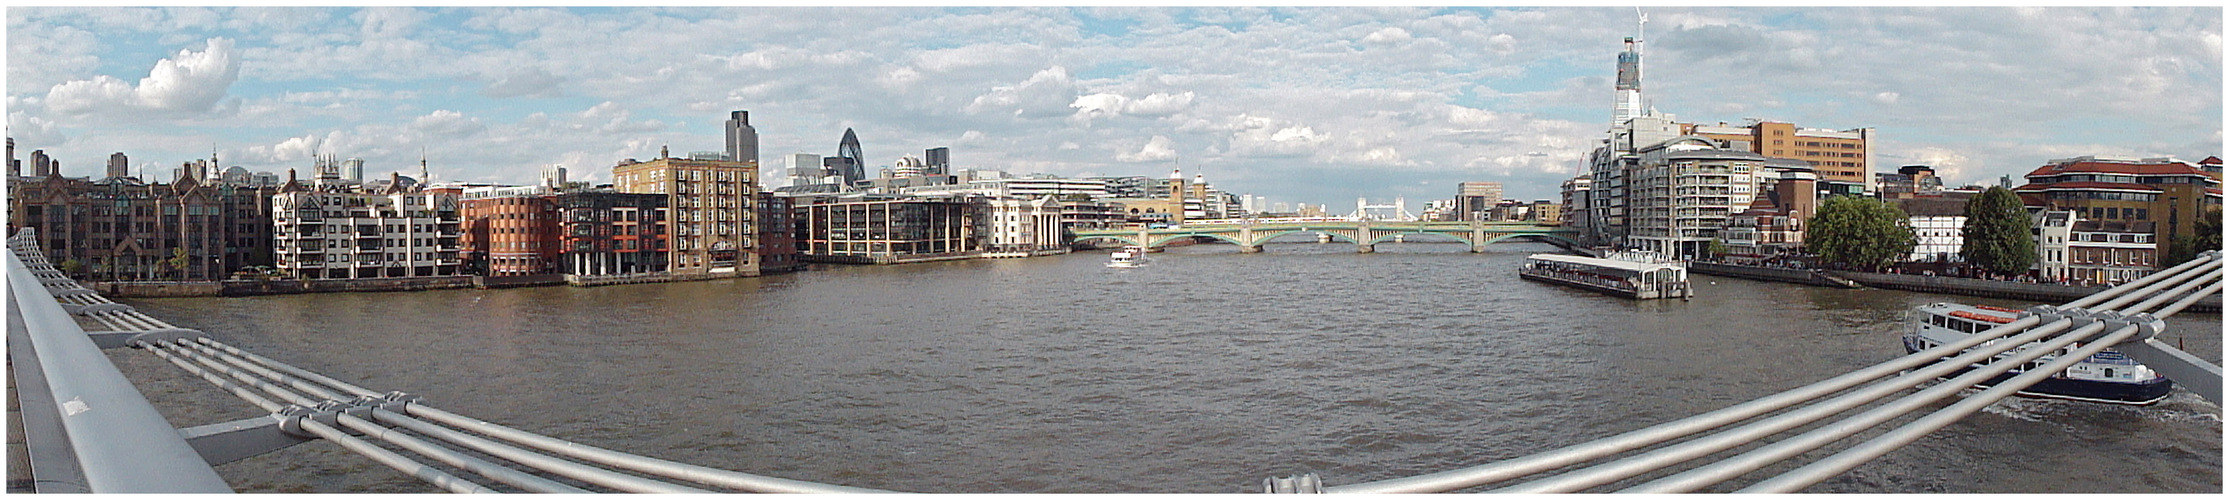 Panoramica desde el Millennium Bridge (London)